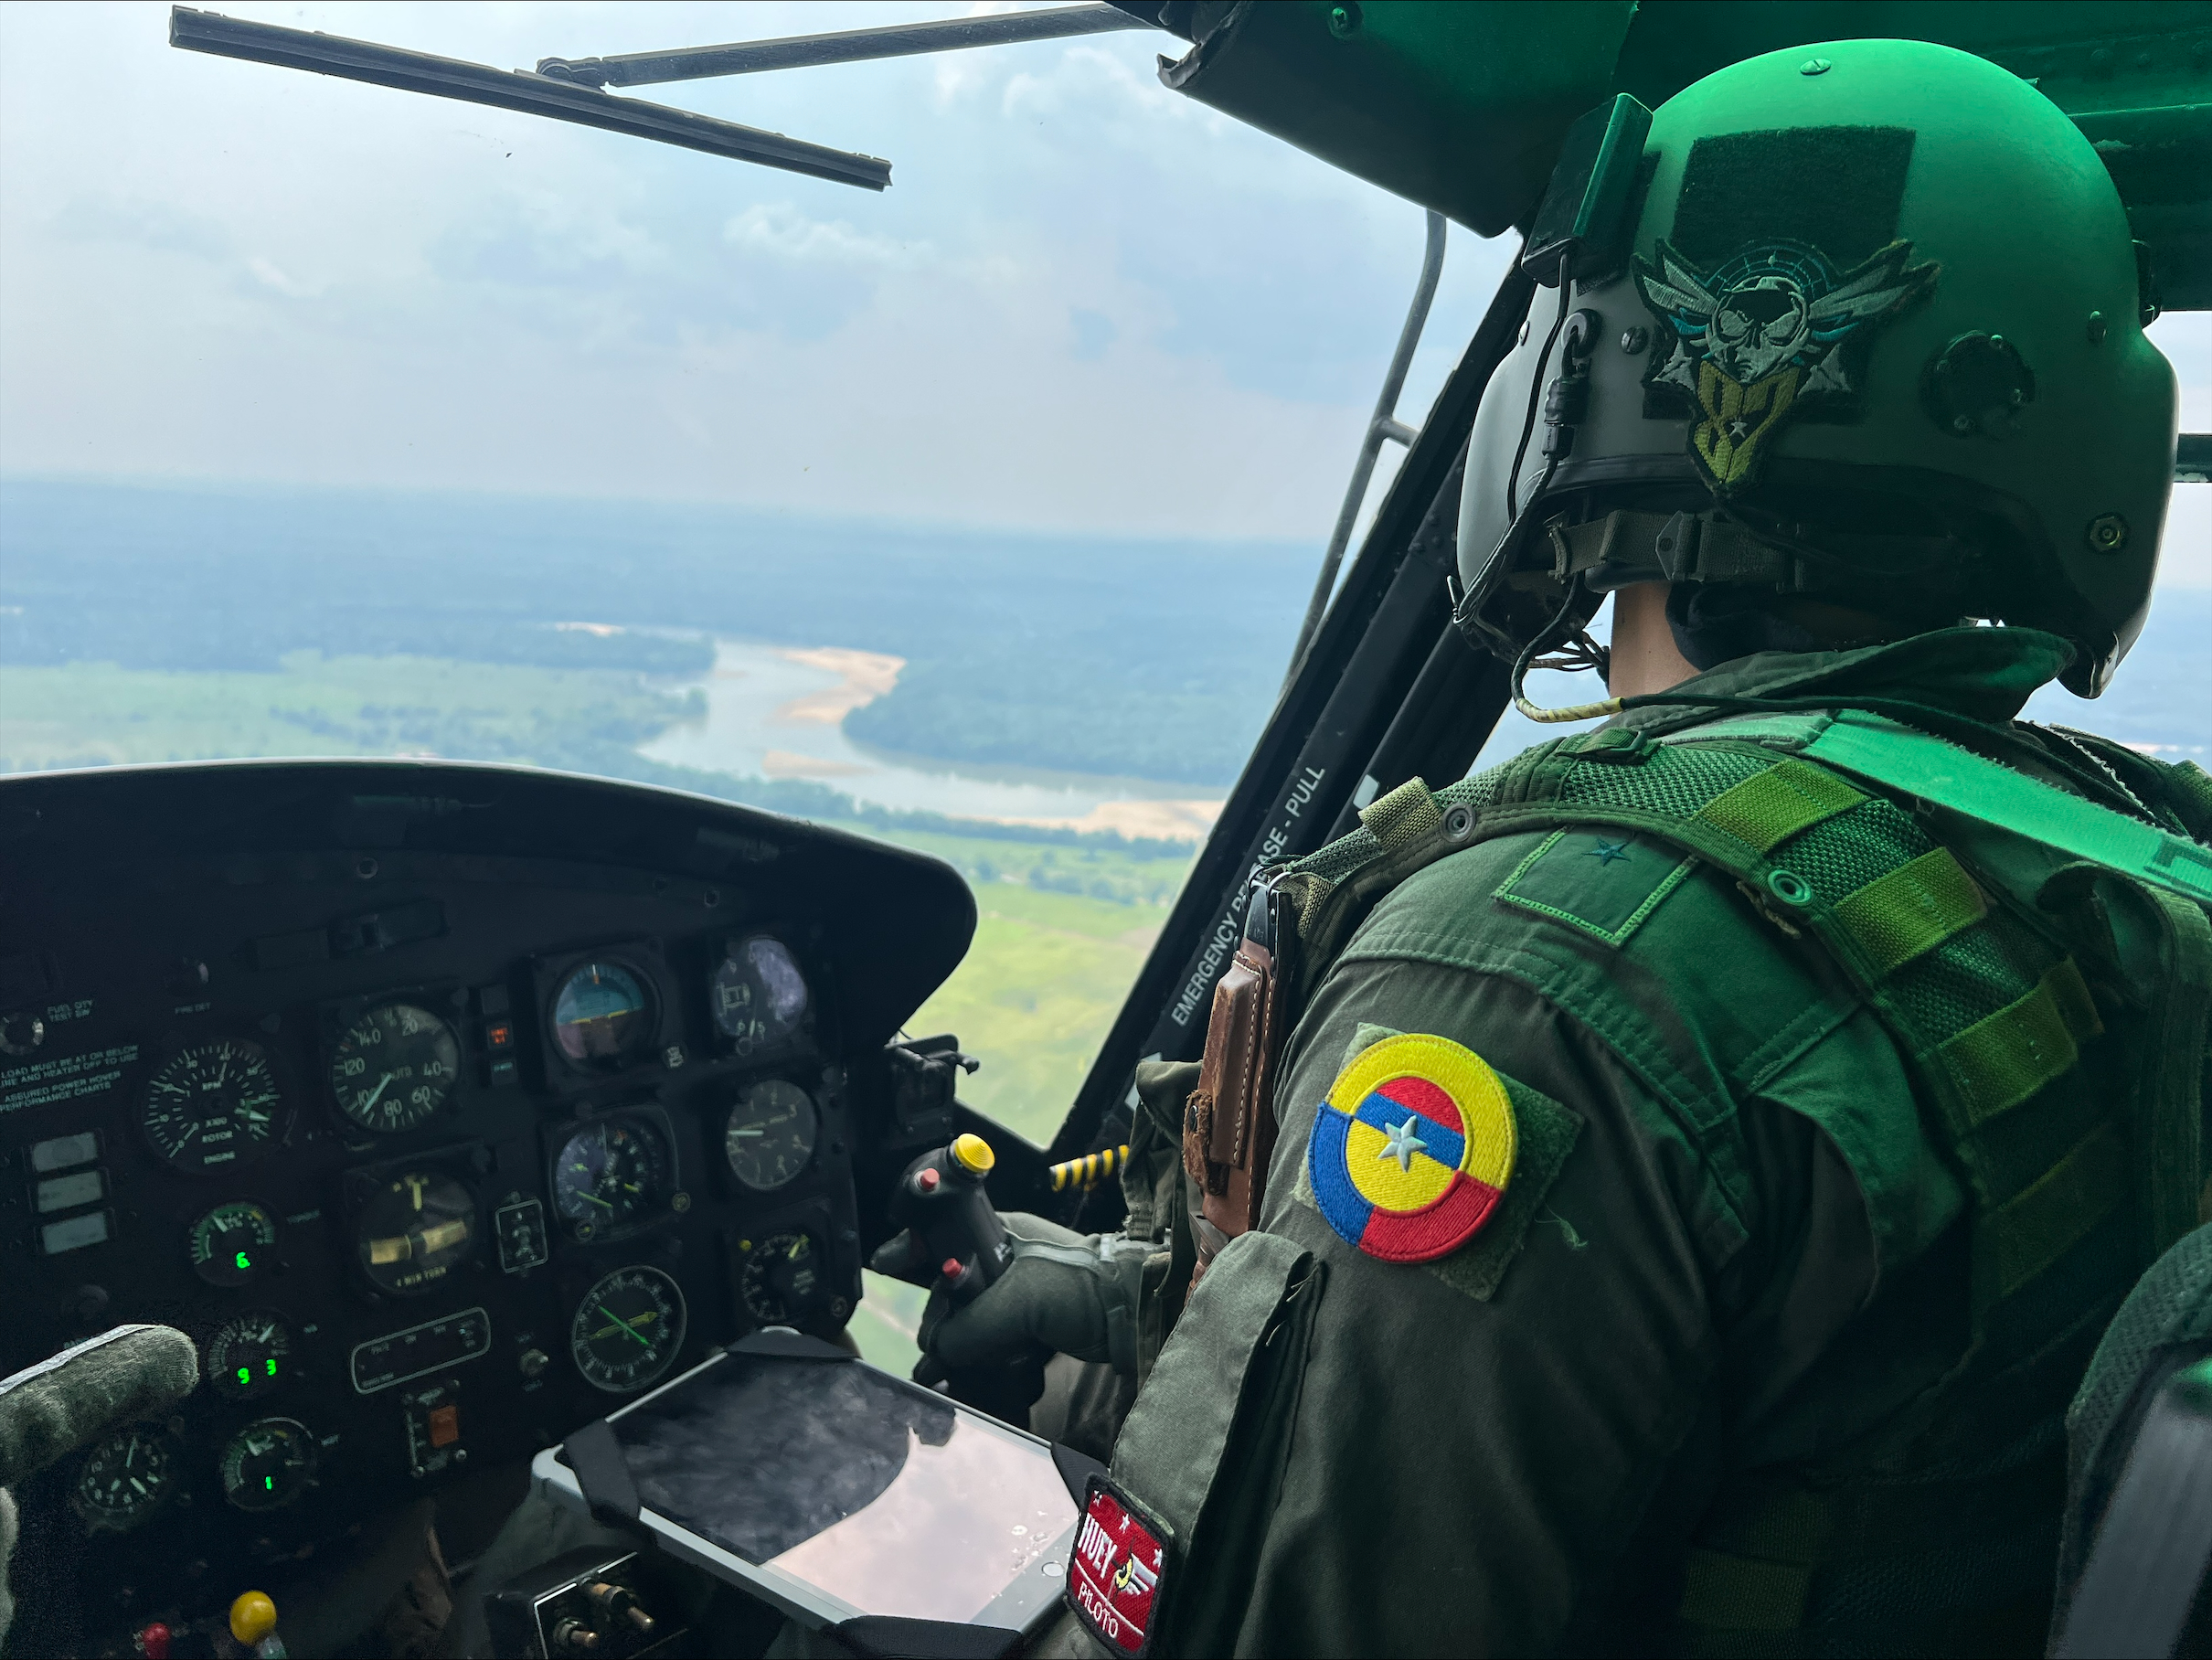 En Caquetá, su Fuerza Aeroespacial realiza misiones de vigilancia y reconocimiento